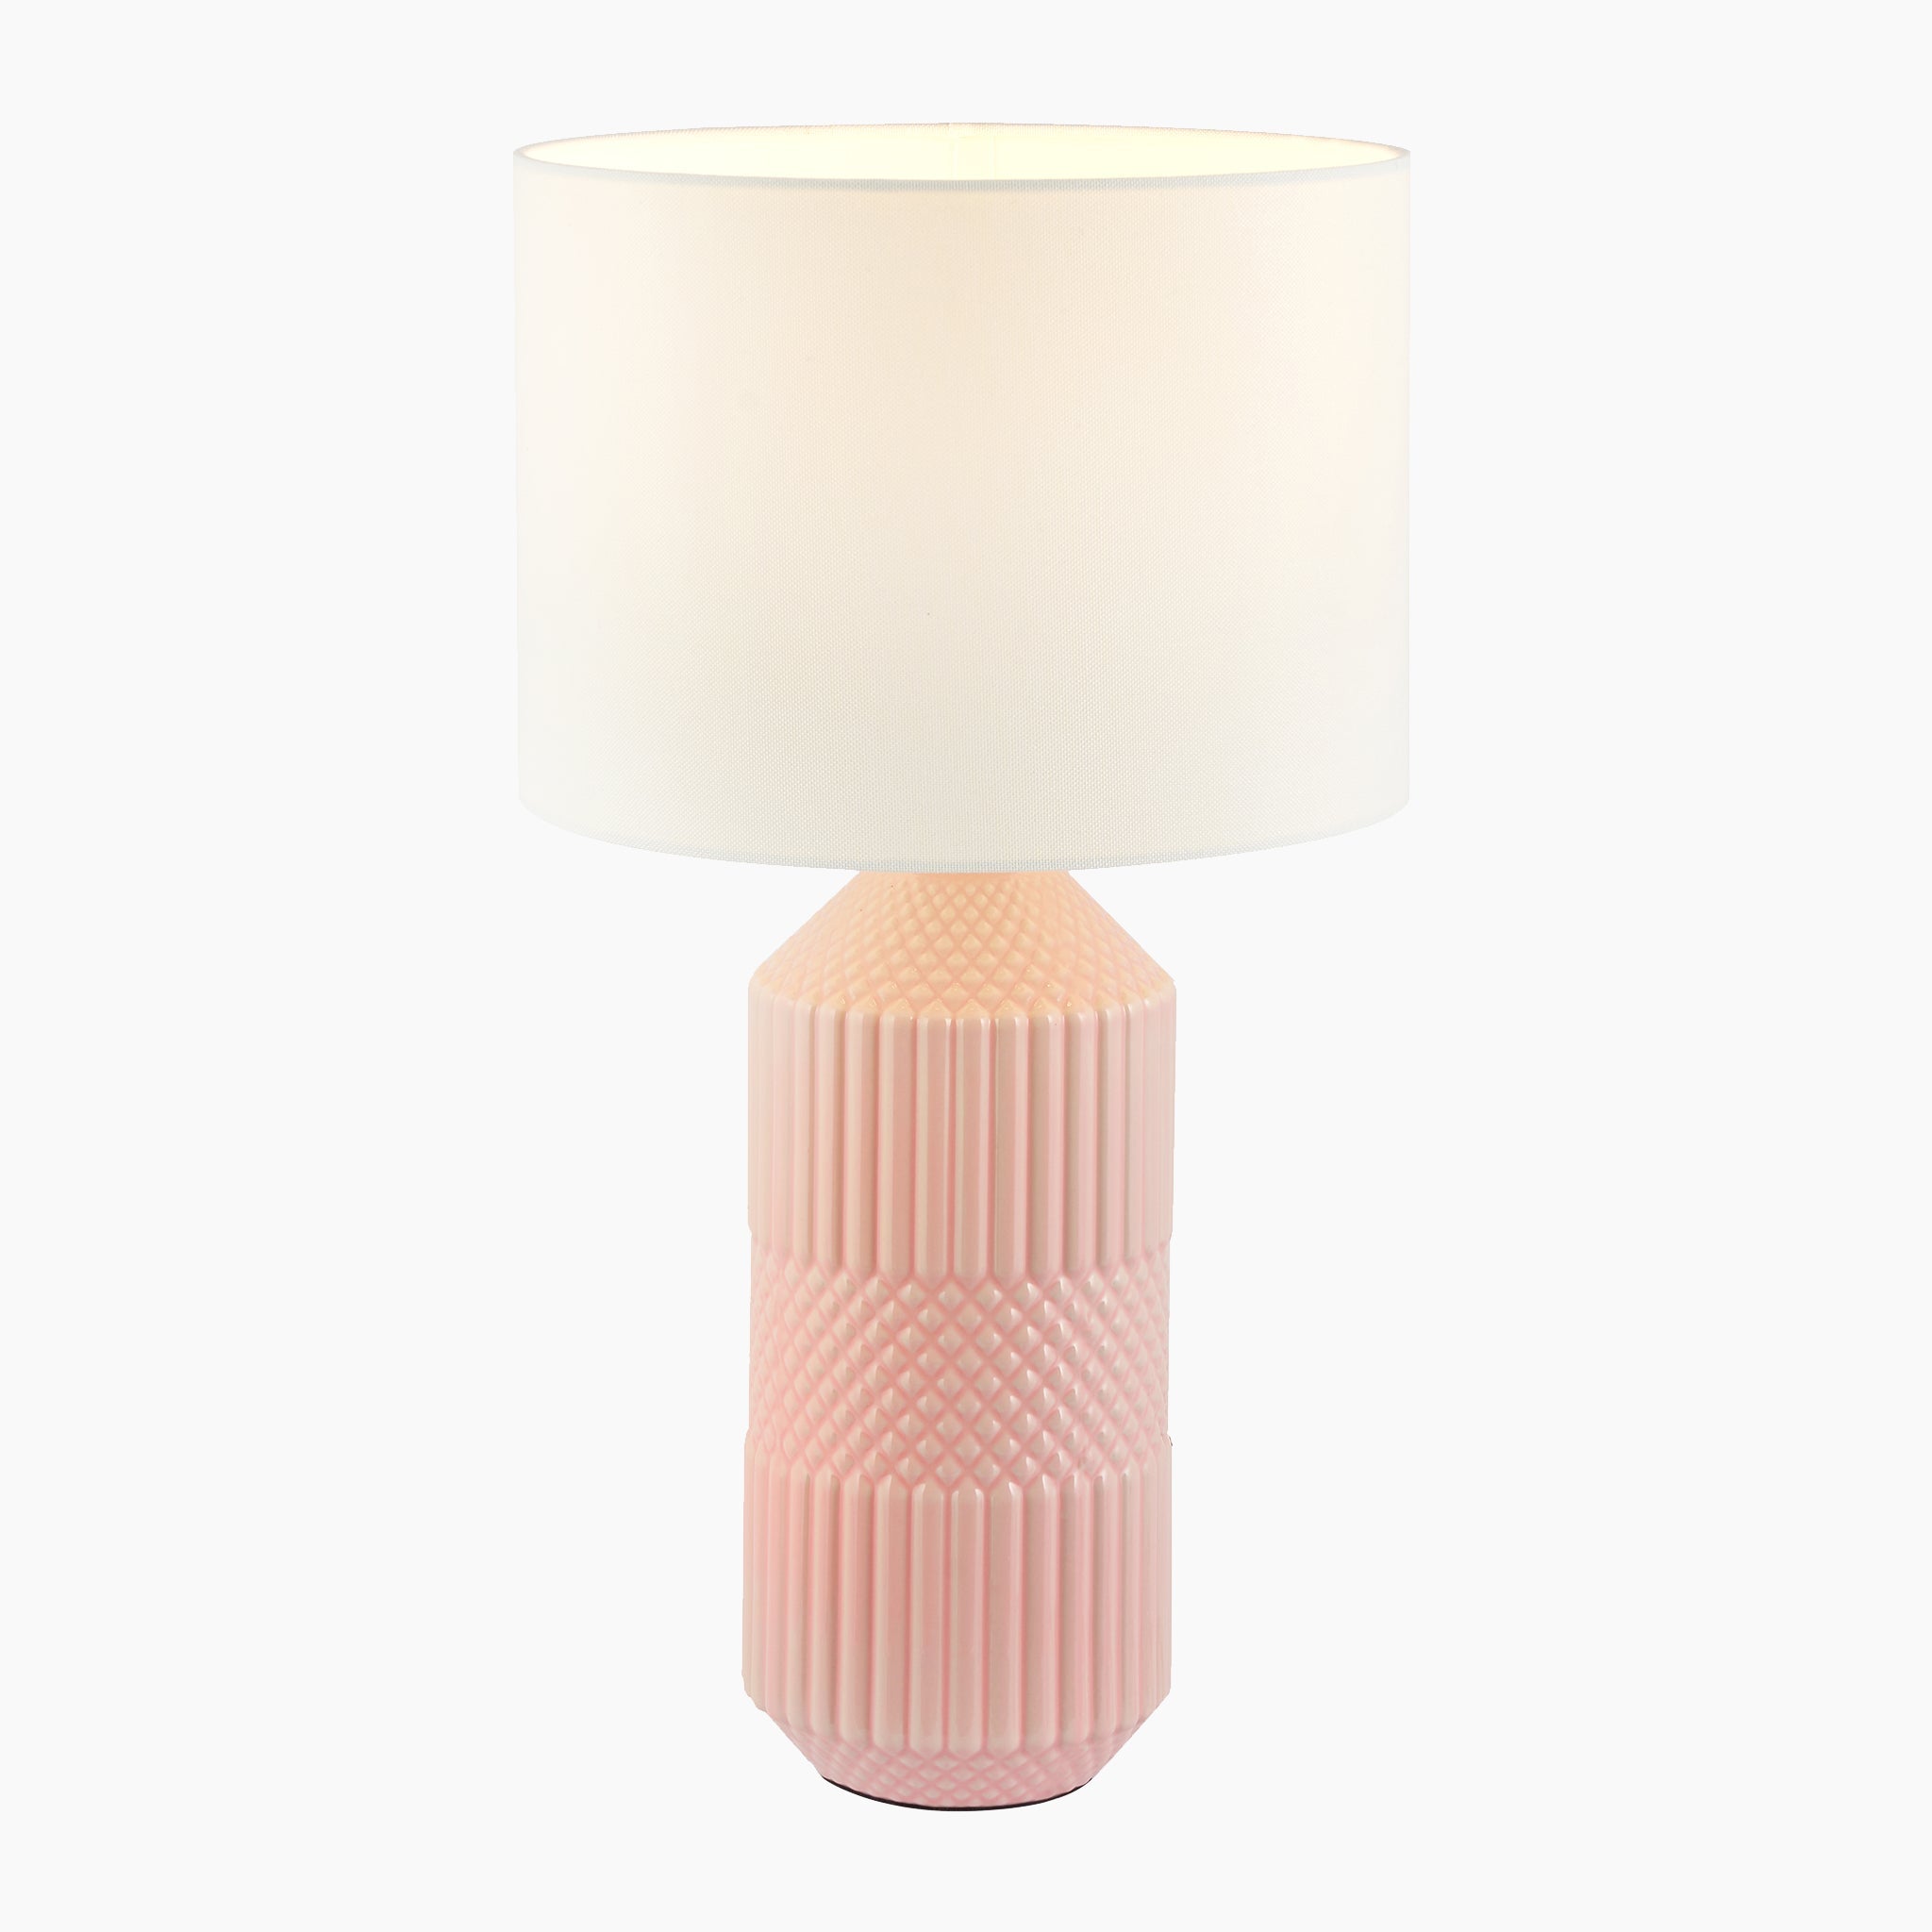 Meribel Geo Textured Tall Ceramic Table Lamp in Pink